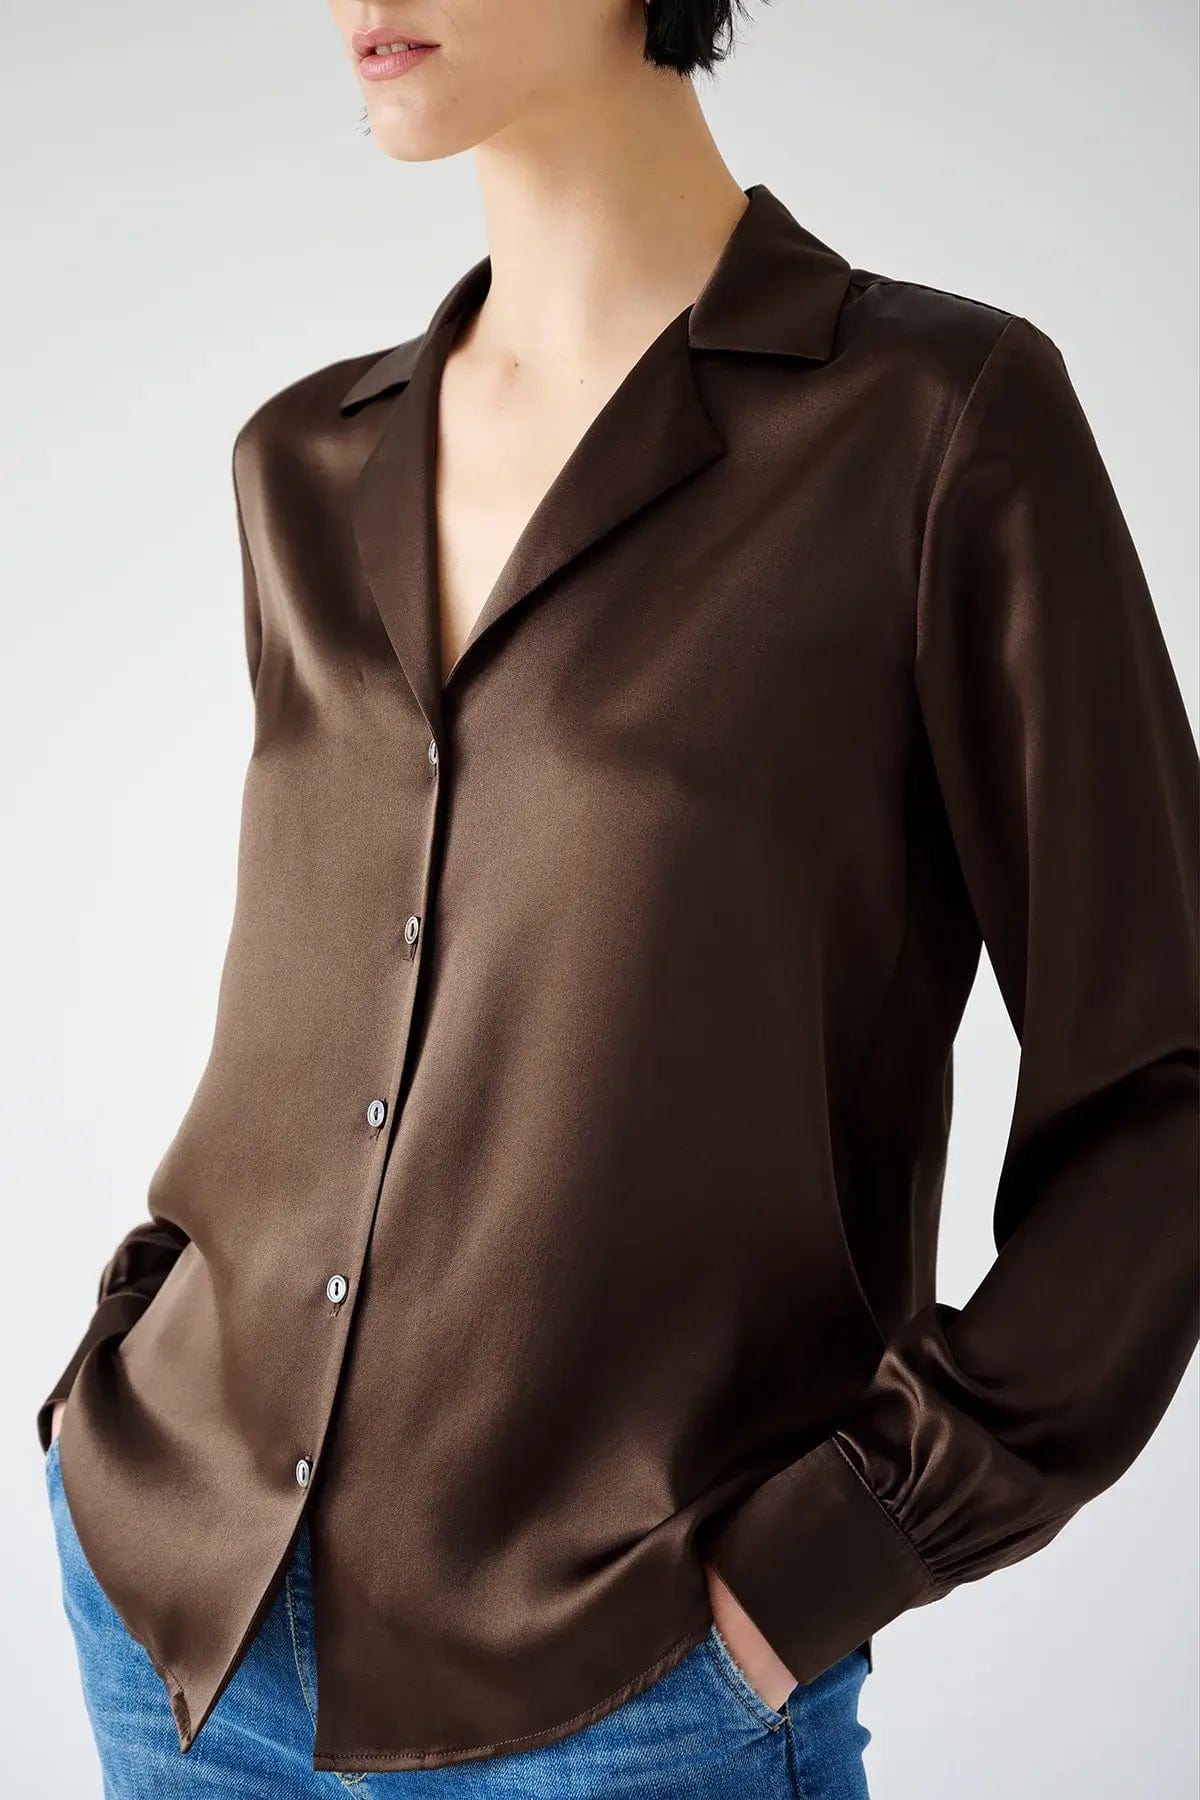 Velvet Shirts Velvet Jenny Graham - Soho Silk blouse in Chocolate